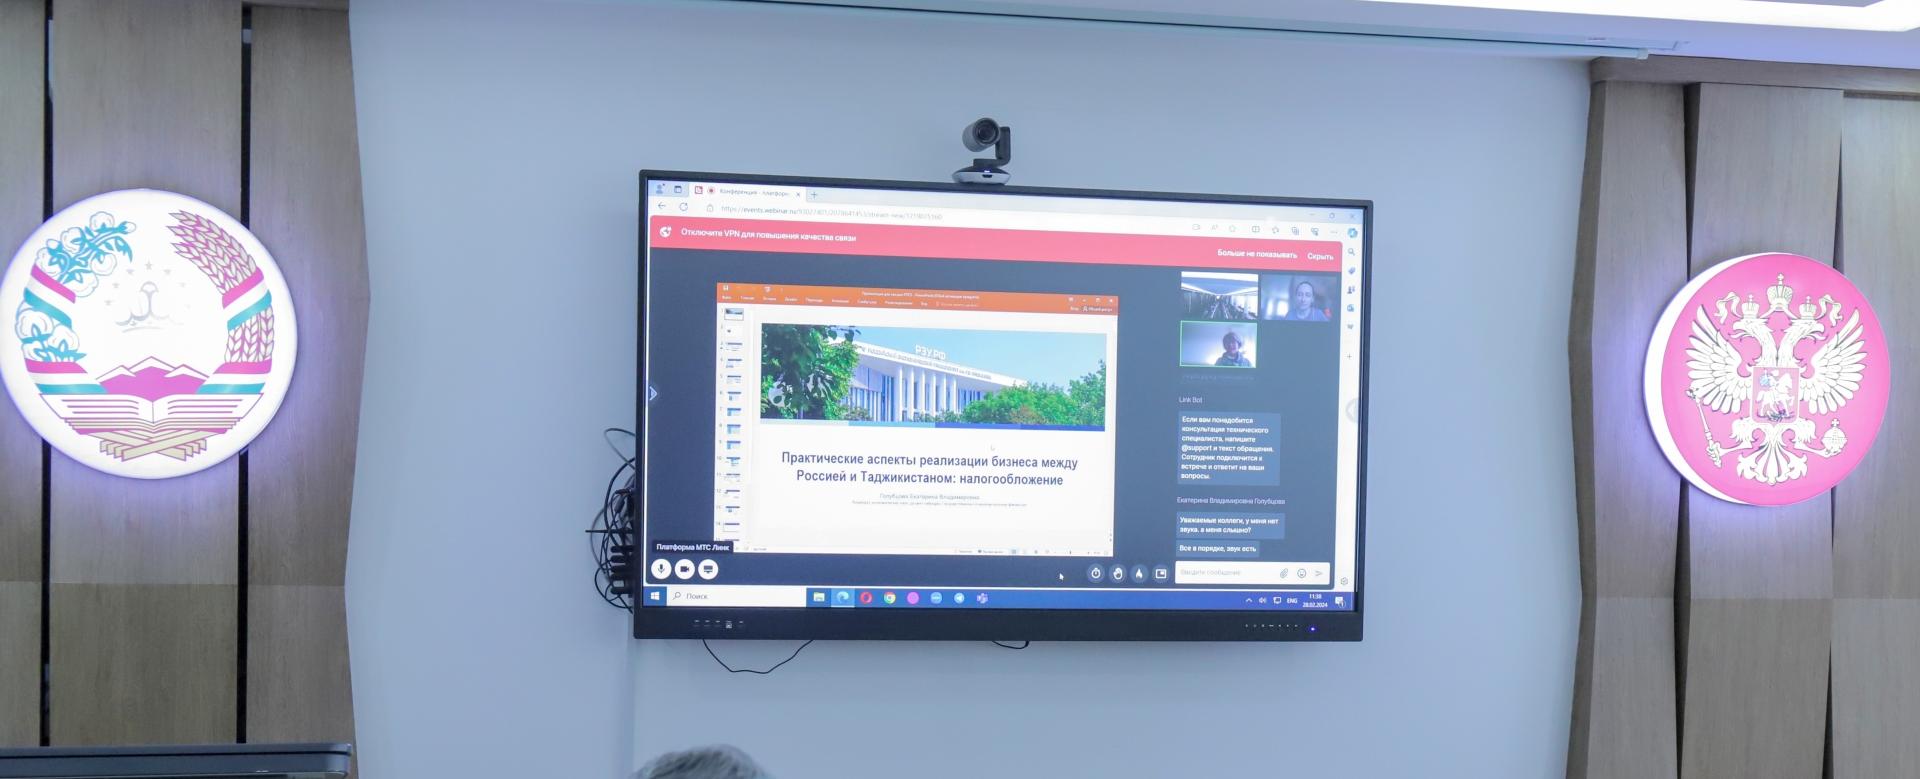 Преподаватели РЭУ им. Г.В. Плеханова провели онлайн-семинар в области налогов и налогообложения